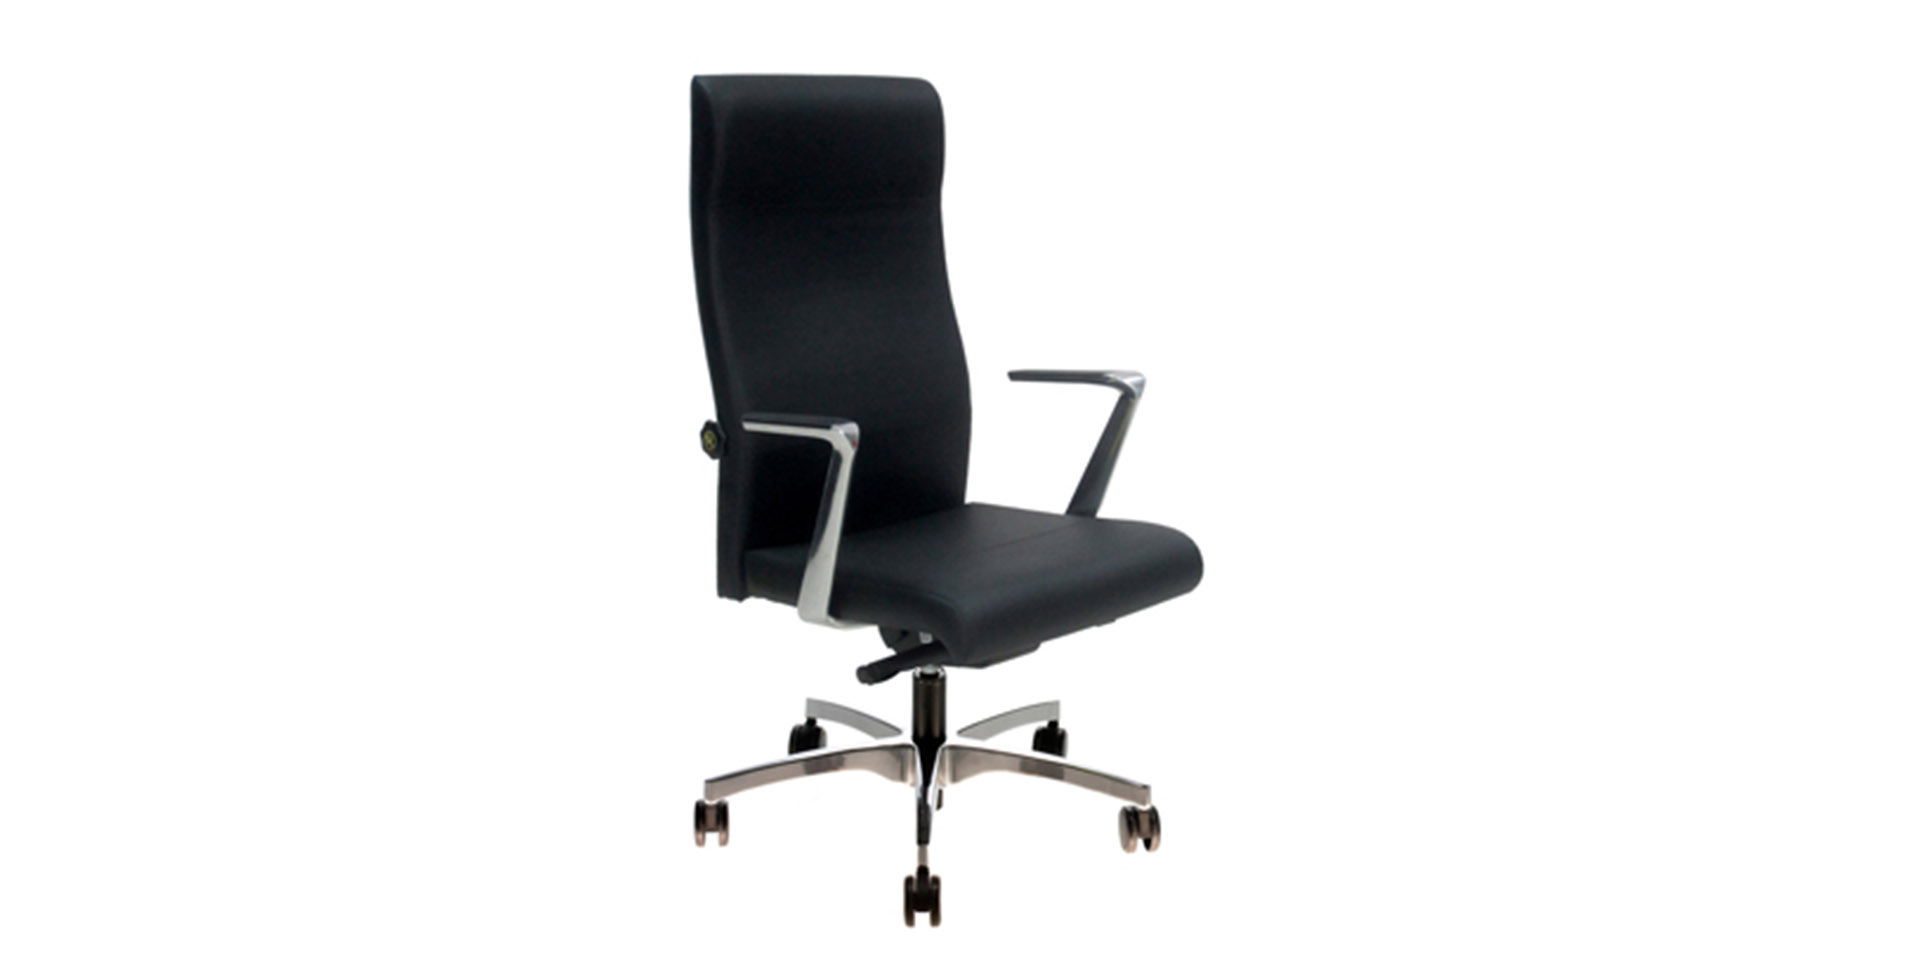 Mobiliario para oficina - silla ergonómica